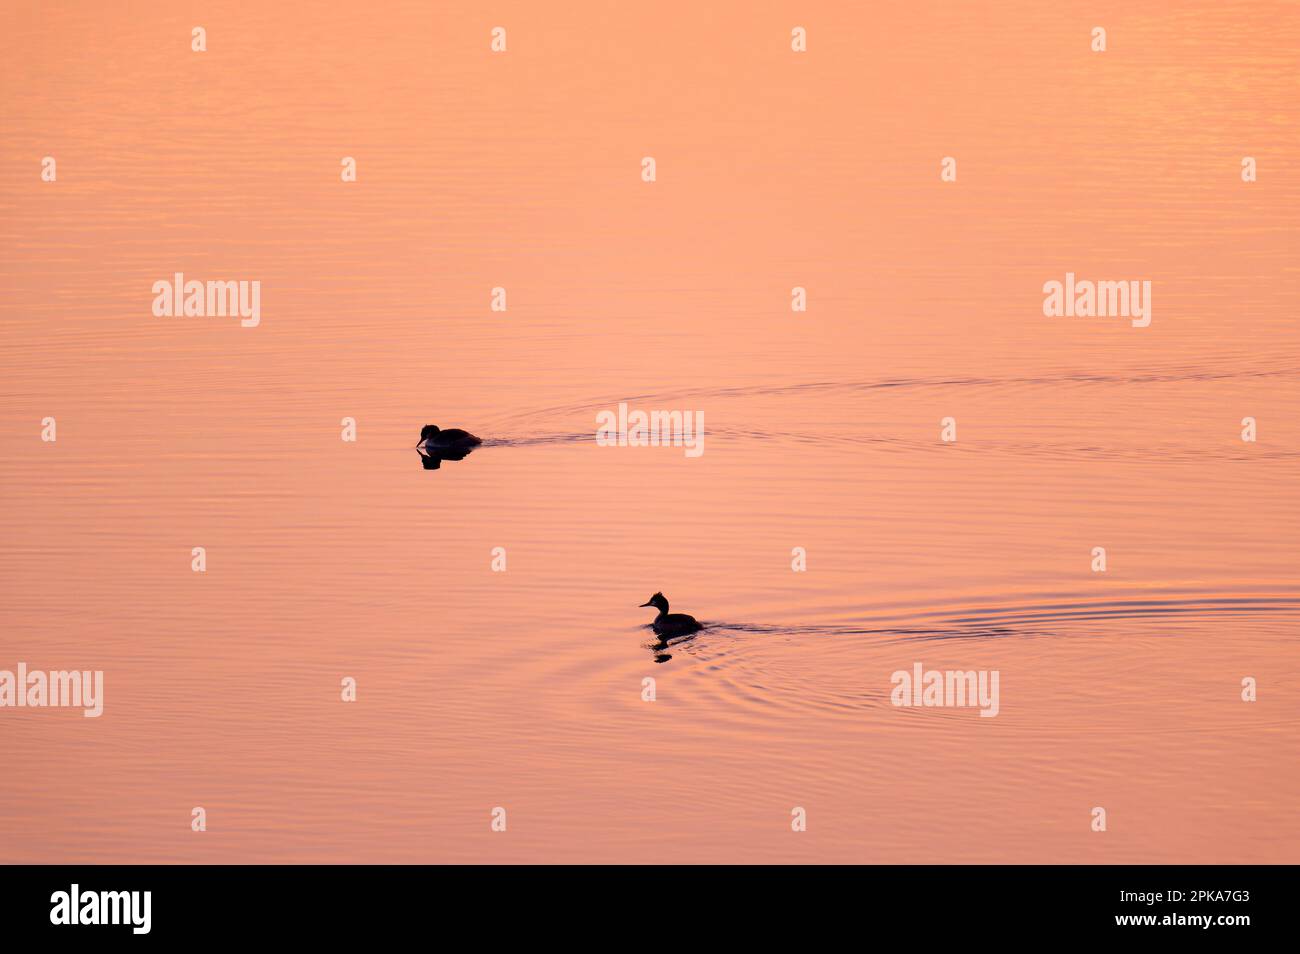 Abendliche Atmosphäre am Lac du Temple, Vögel schwimmen auf dem See, Hintergrundlicht zum Sonnenuntergang, Foret d'Orient Naturpark, Champagner, Frankreich, Grand Est Stockfoto